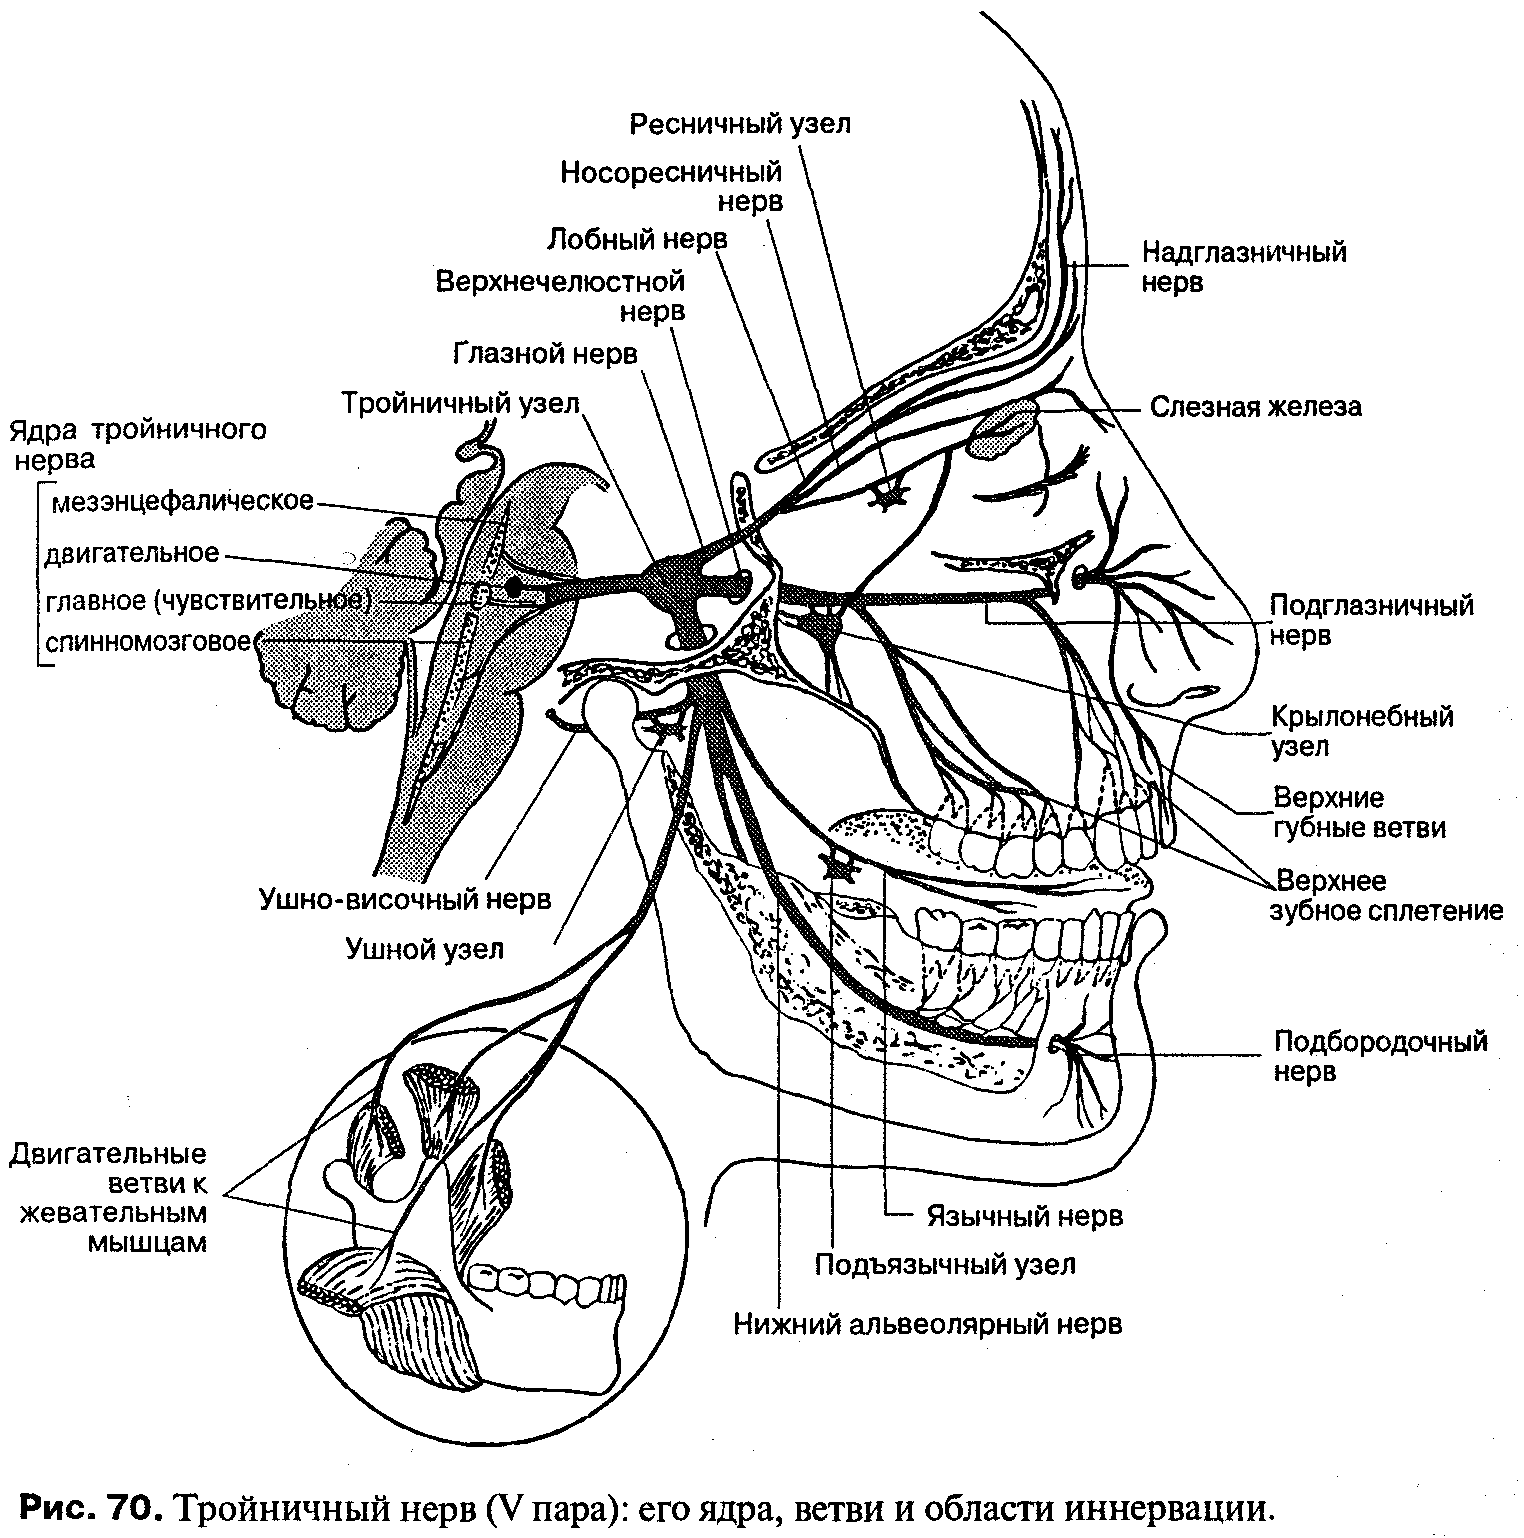 2 лицевой нерв. Ветви тройничного нерва анатомия. Схема проекции ветвей тройничного нерва. Иннервация тройничного нерва схема. Узлы тройничного нерва анатомия.